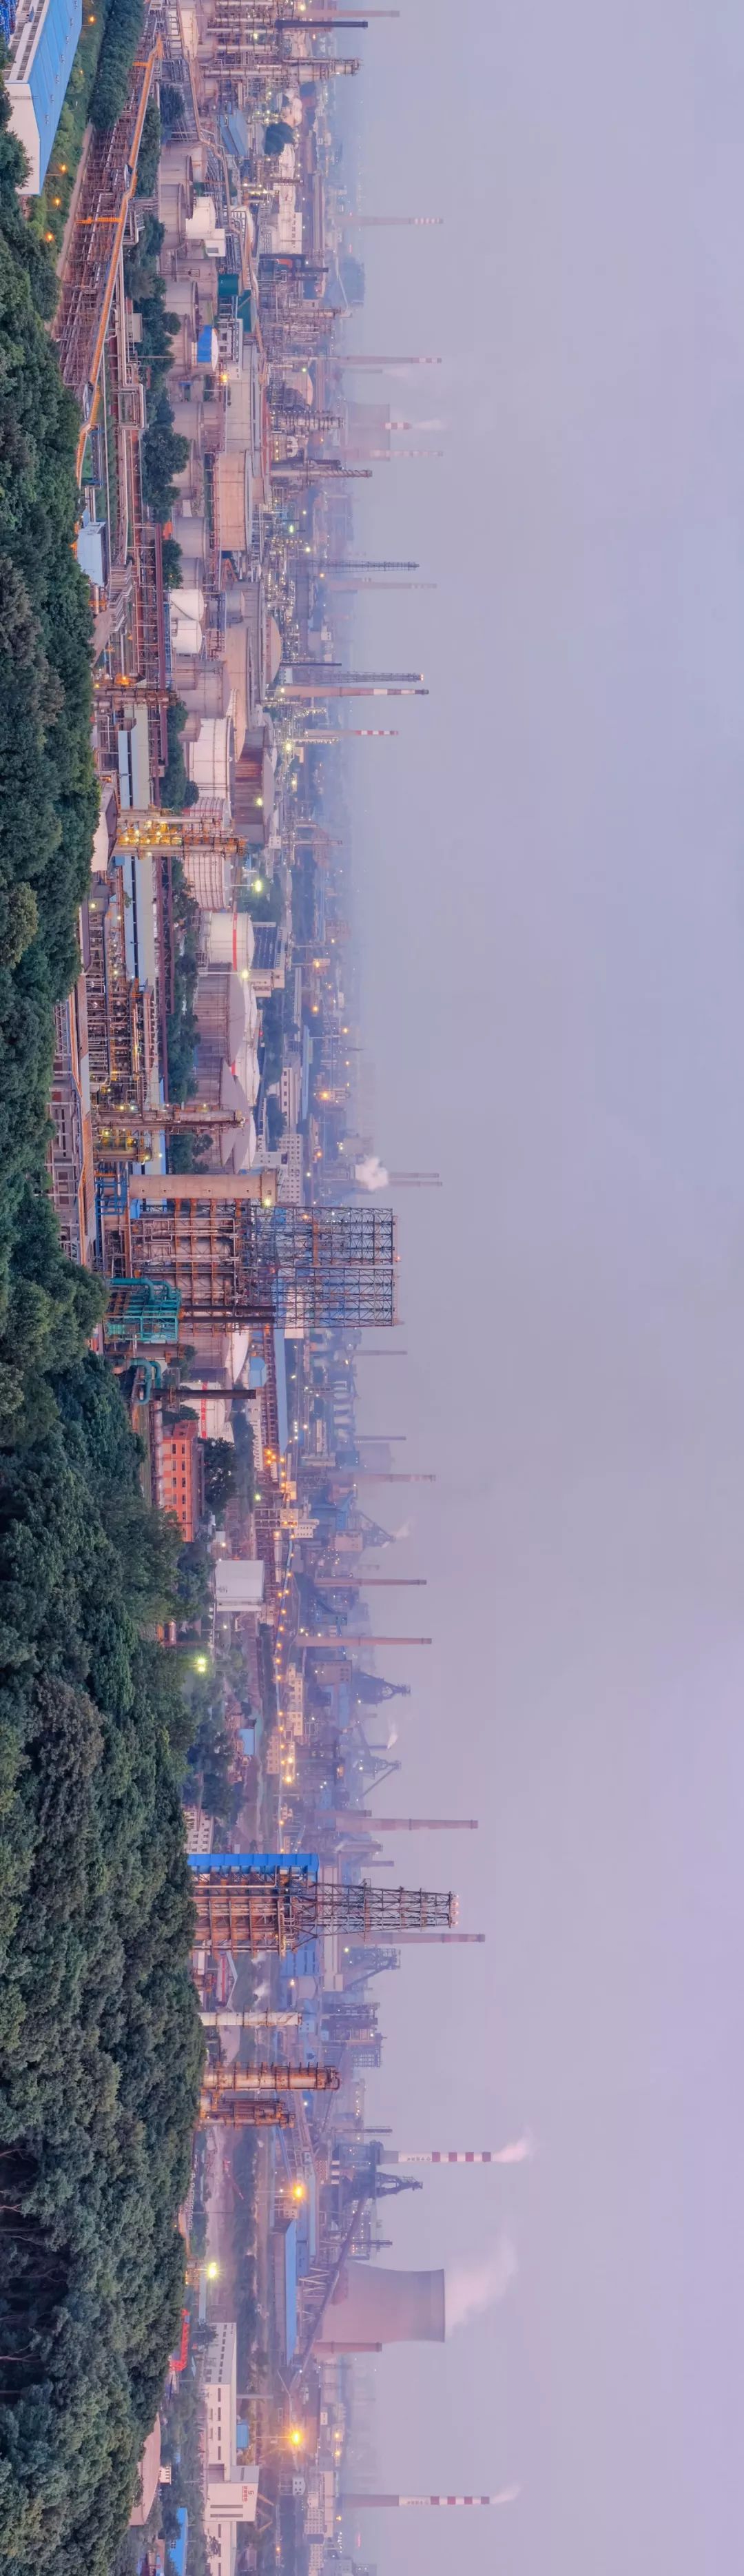 武汉钢铁集团工厂:1995年开始建设,目前位居全球钢铁行业第四位公元